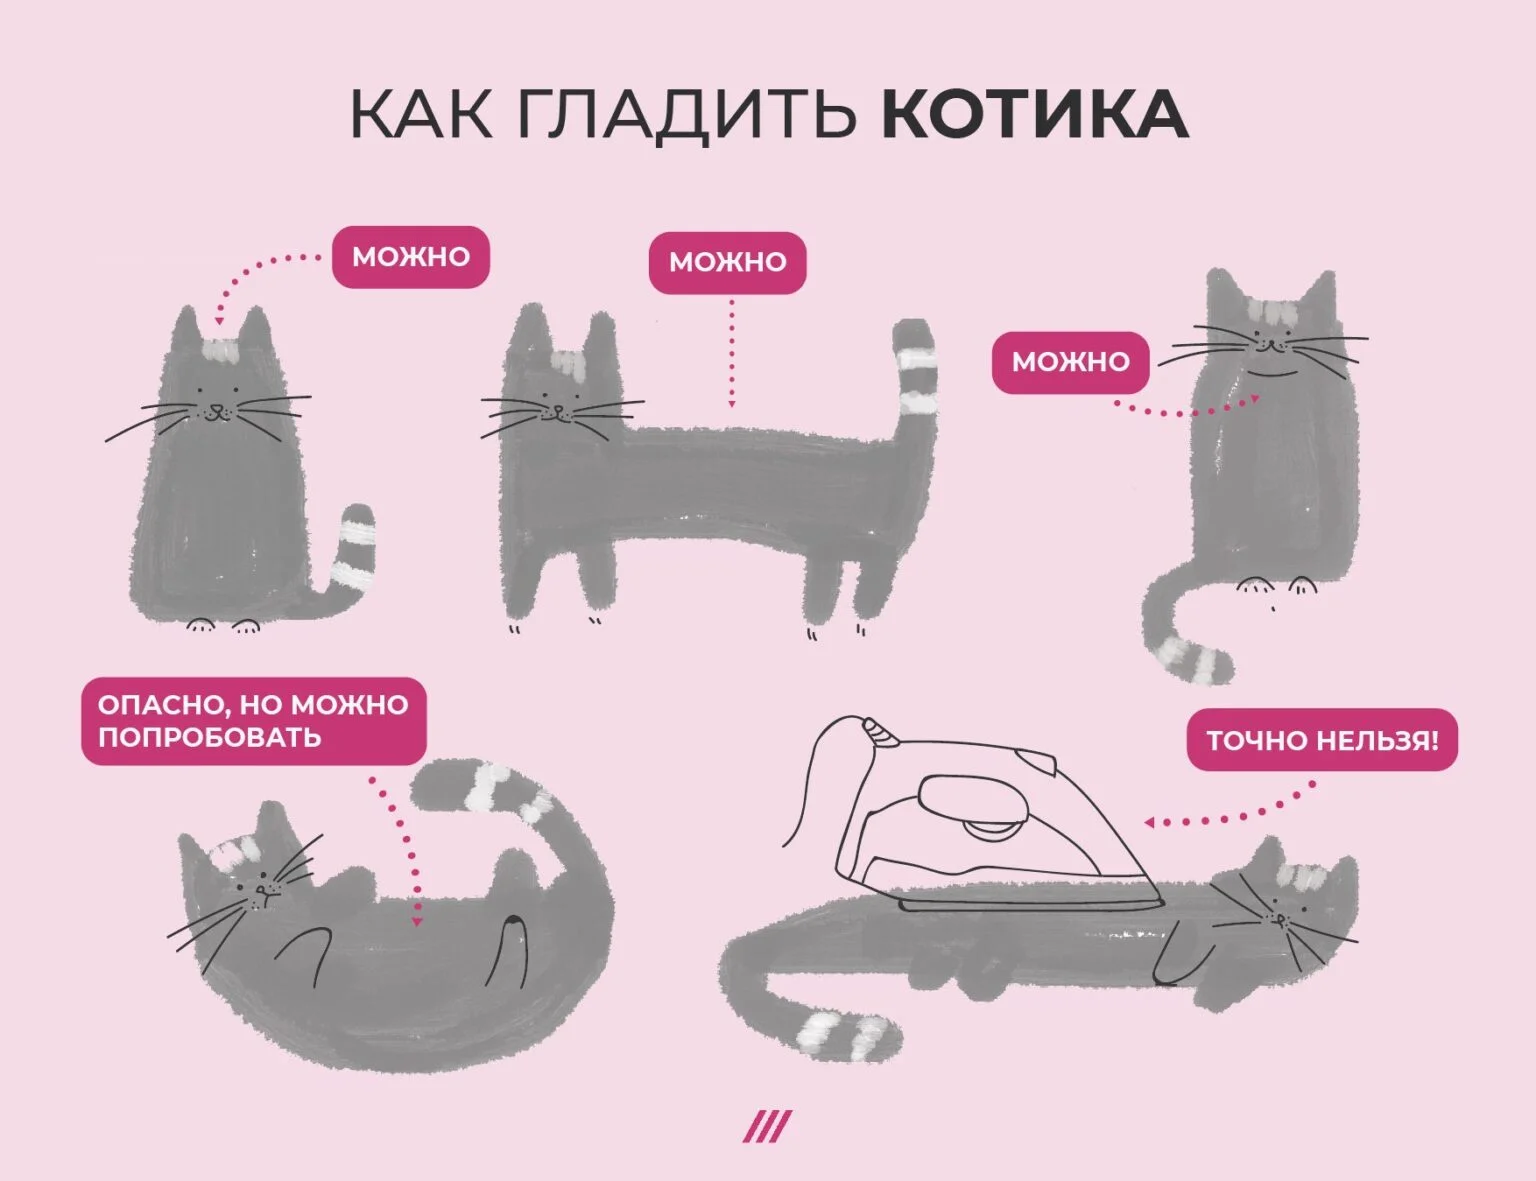 Схема кота